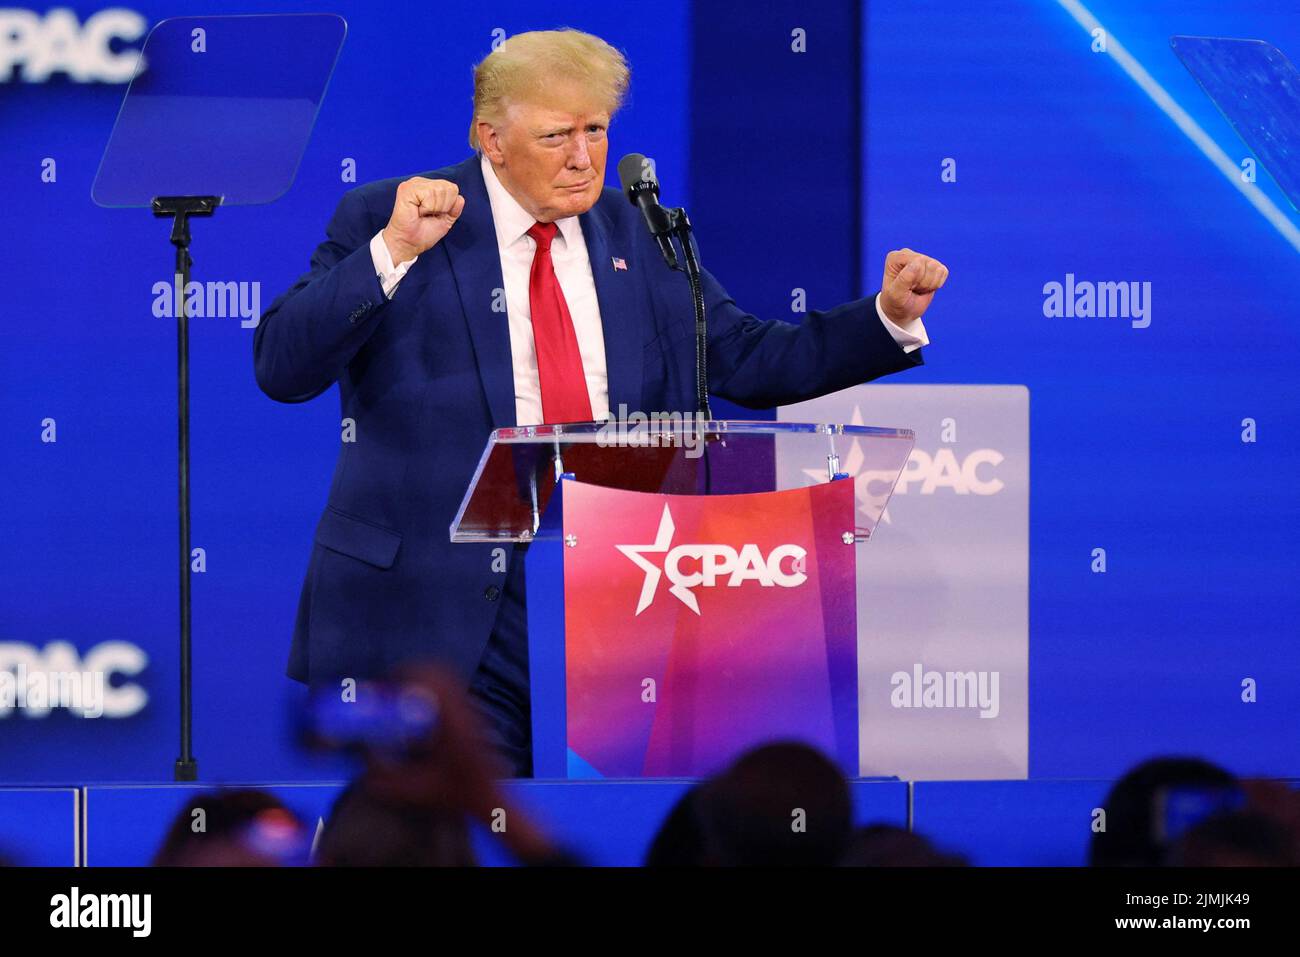 El ex presidente estadounidense Donald Trump baila en el escenario después de hablar en la Conferencia de Acción Política Conservadora (CPAC) en Dallas, Texas, EE.UU., el 6 de agosto de 2022. REUTERS/Brian Snyder Foto de stock